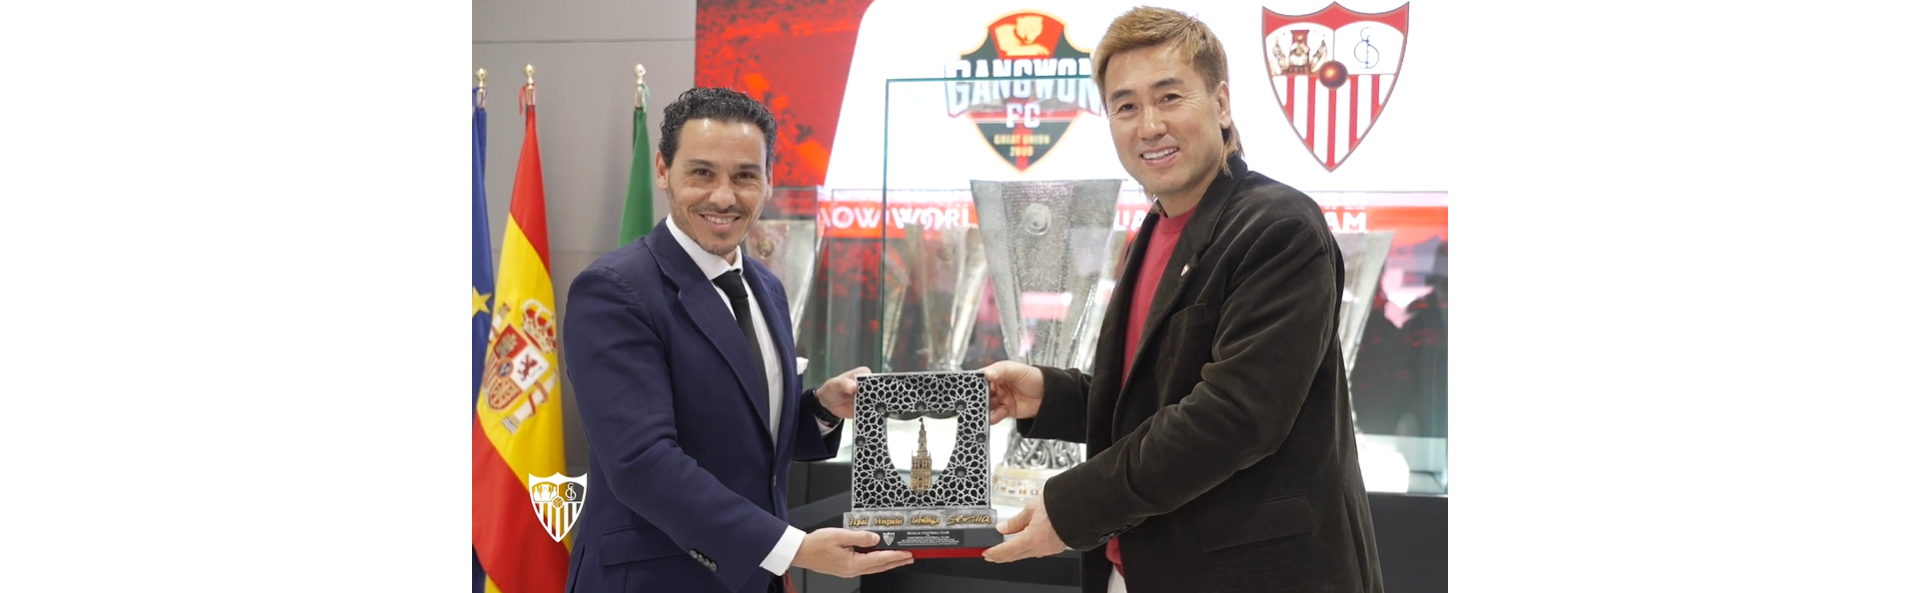 El presidente y el CEO del Gangwon visitan al Sevilla FC